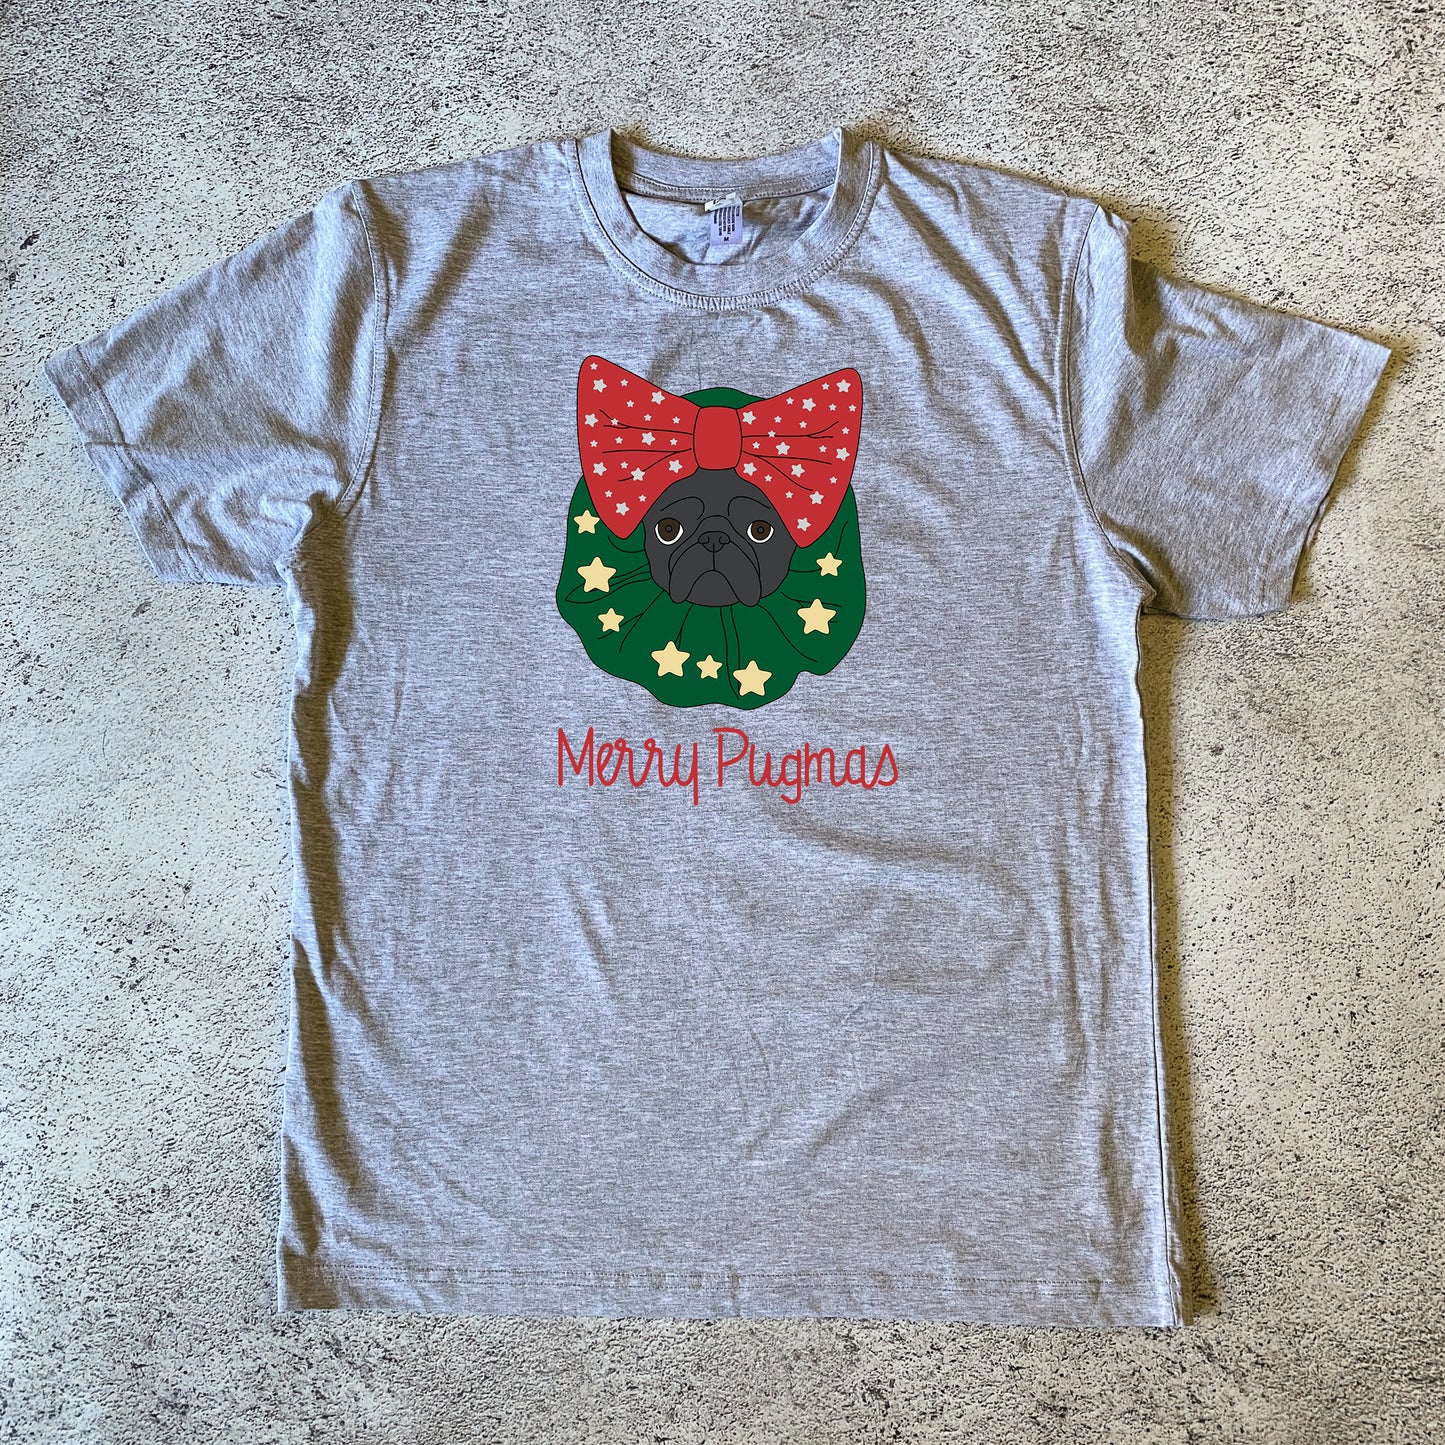 Pugmas Wreath Unisex T-Shirt